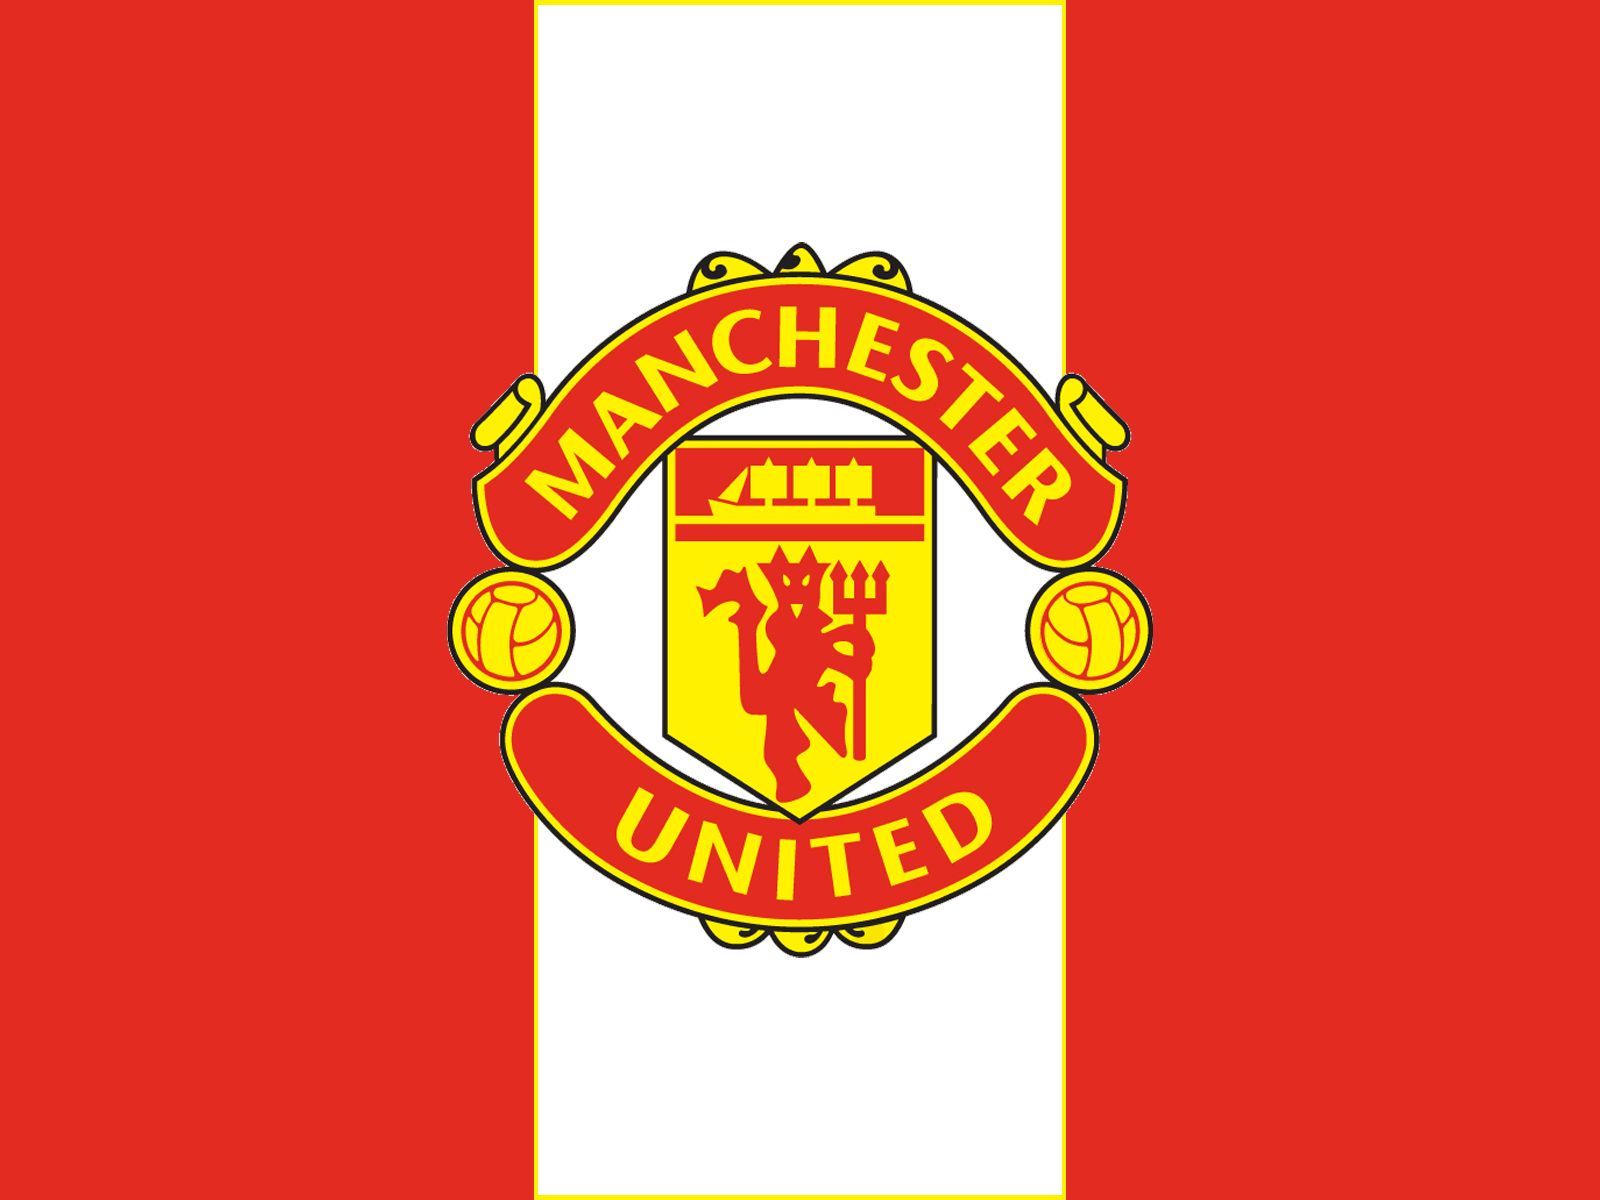 Manchester-United-Wallpaper-1080p.jpg